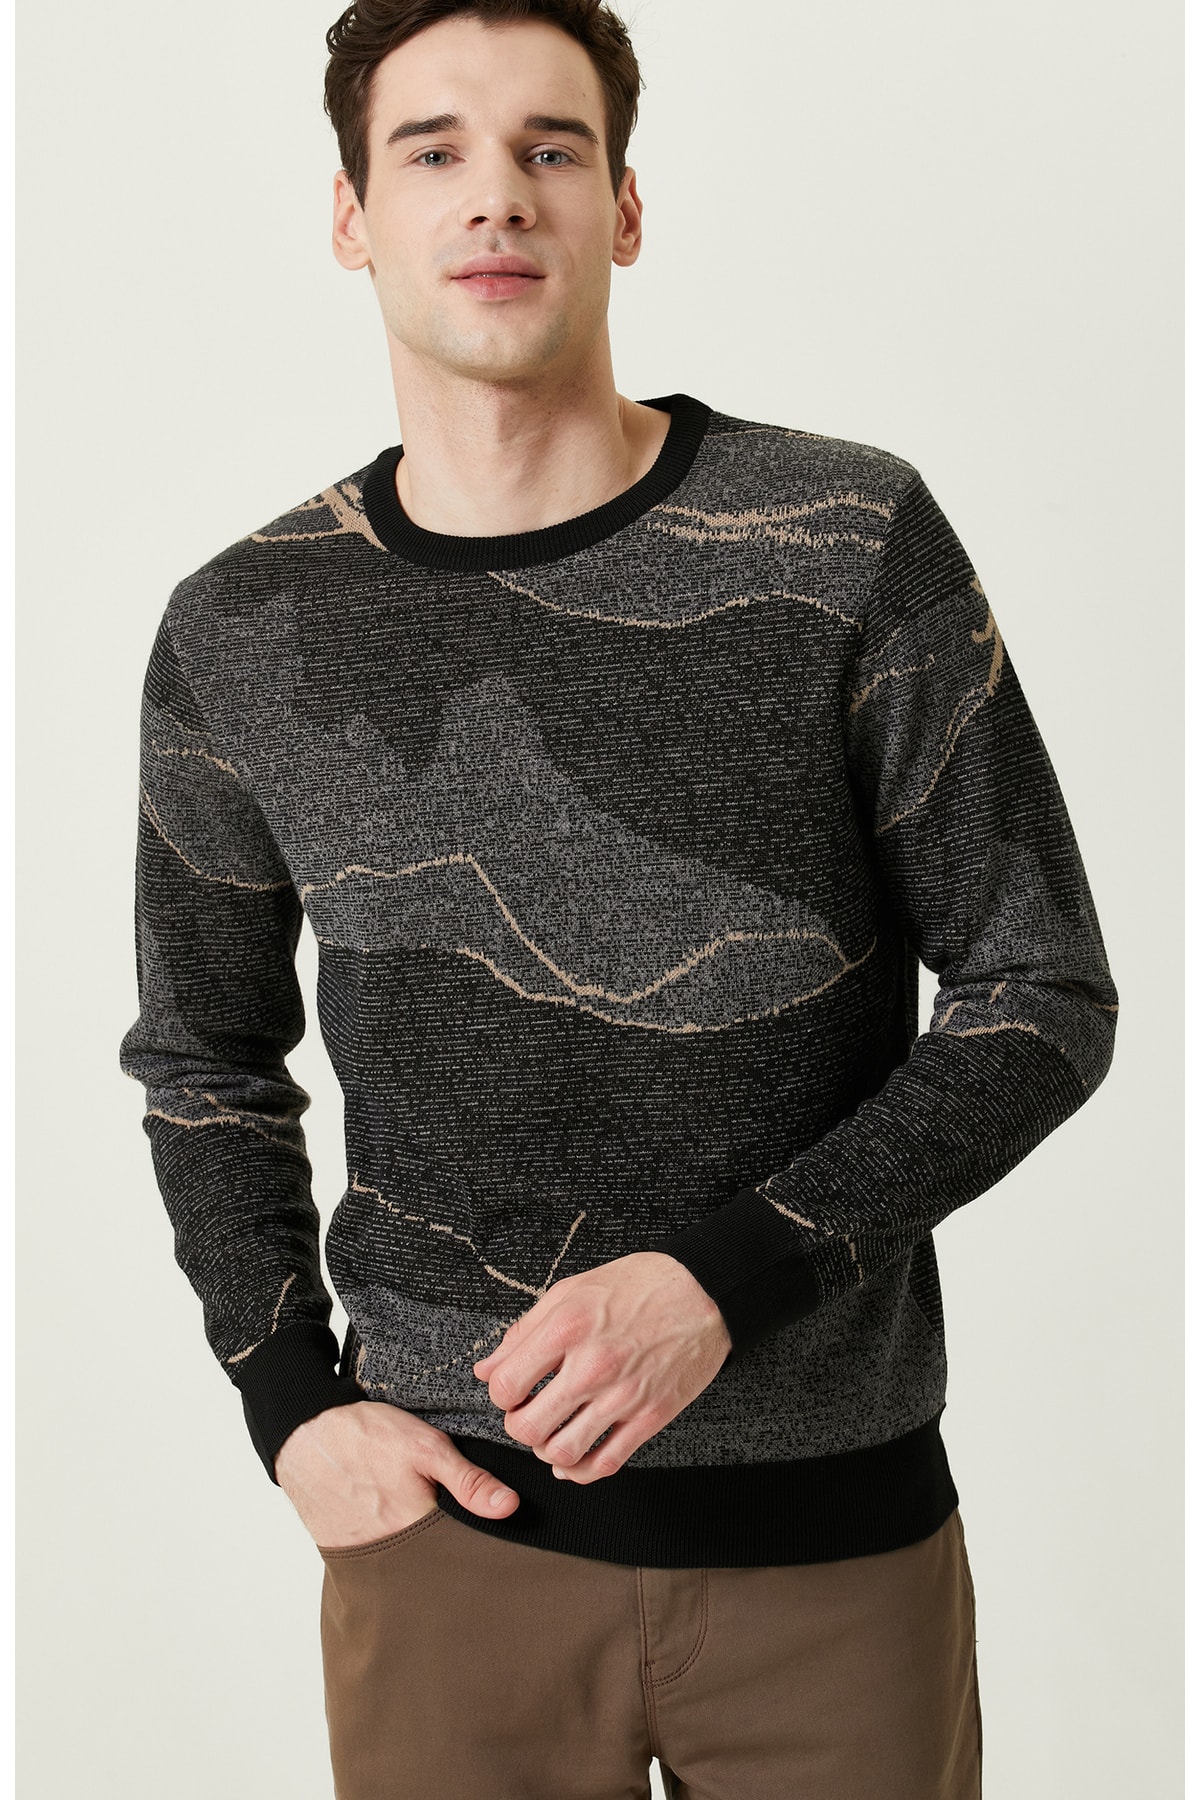 Черный трикотажный свитер антрацитового цвета с камуфляжным узором Network, черный